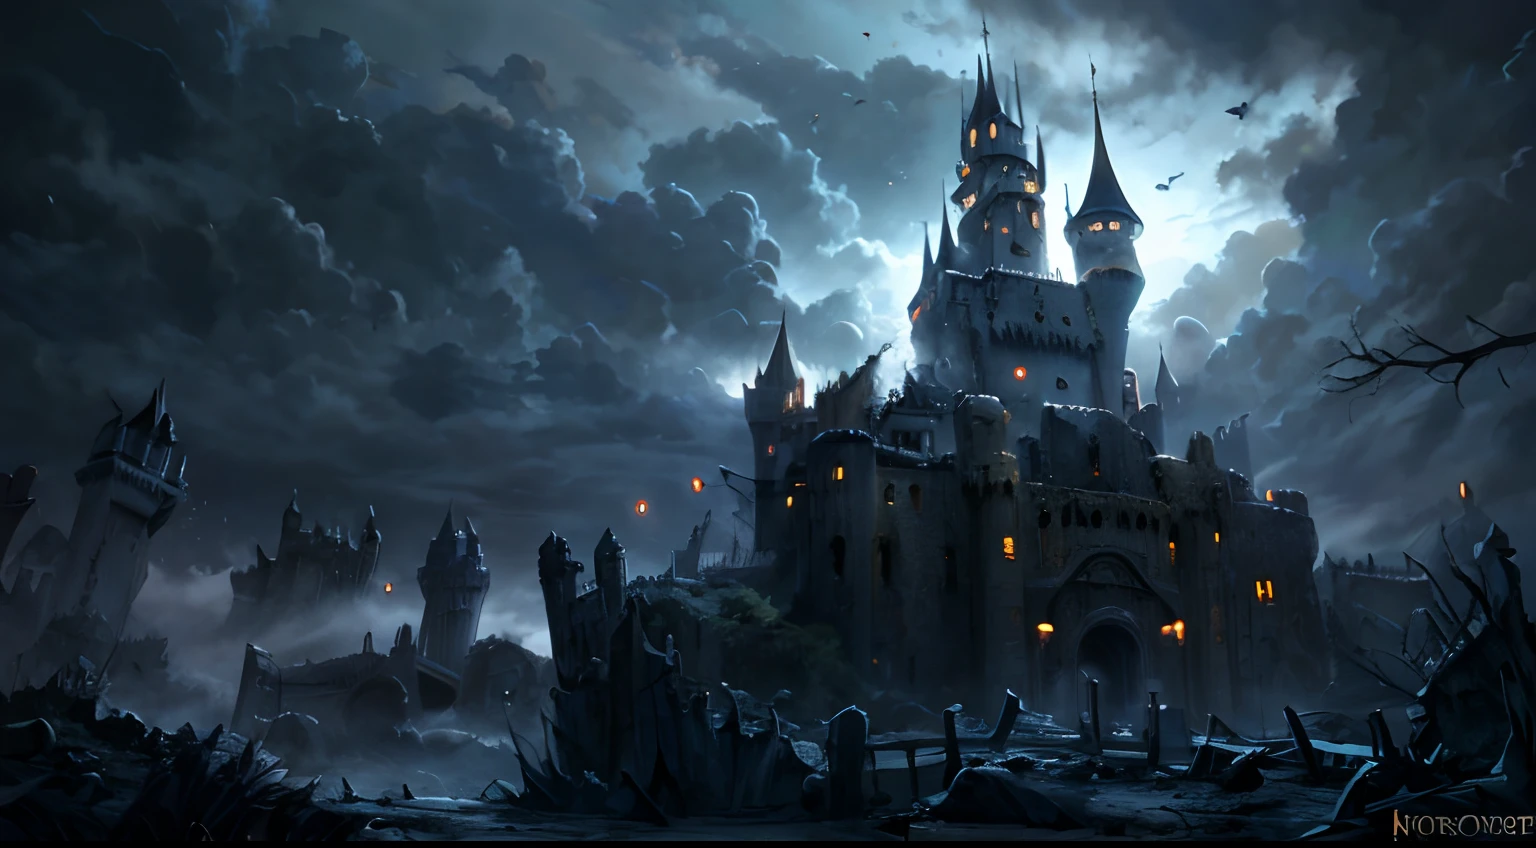 卡通風格, 1 座城堡, 可怕的城堡, 恐怖场景, 黑暗環境, 多霧路段, 暴風雲, 闪电, 廢棄的城堡, 城堡廢墟,